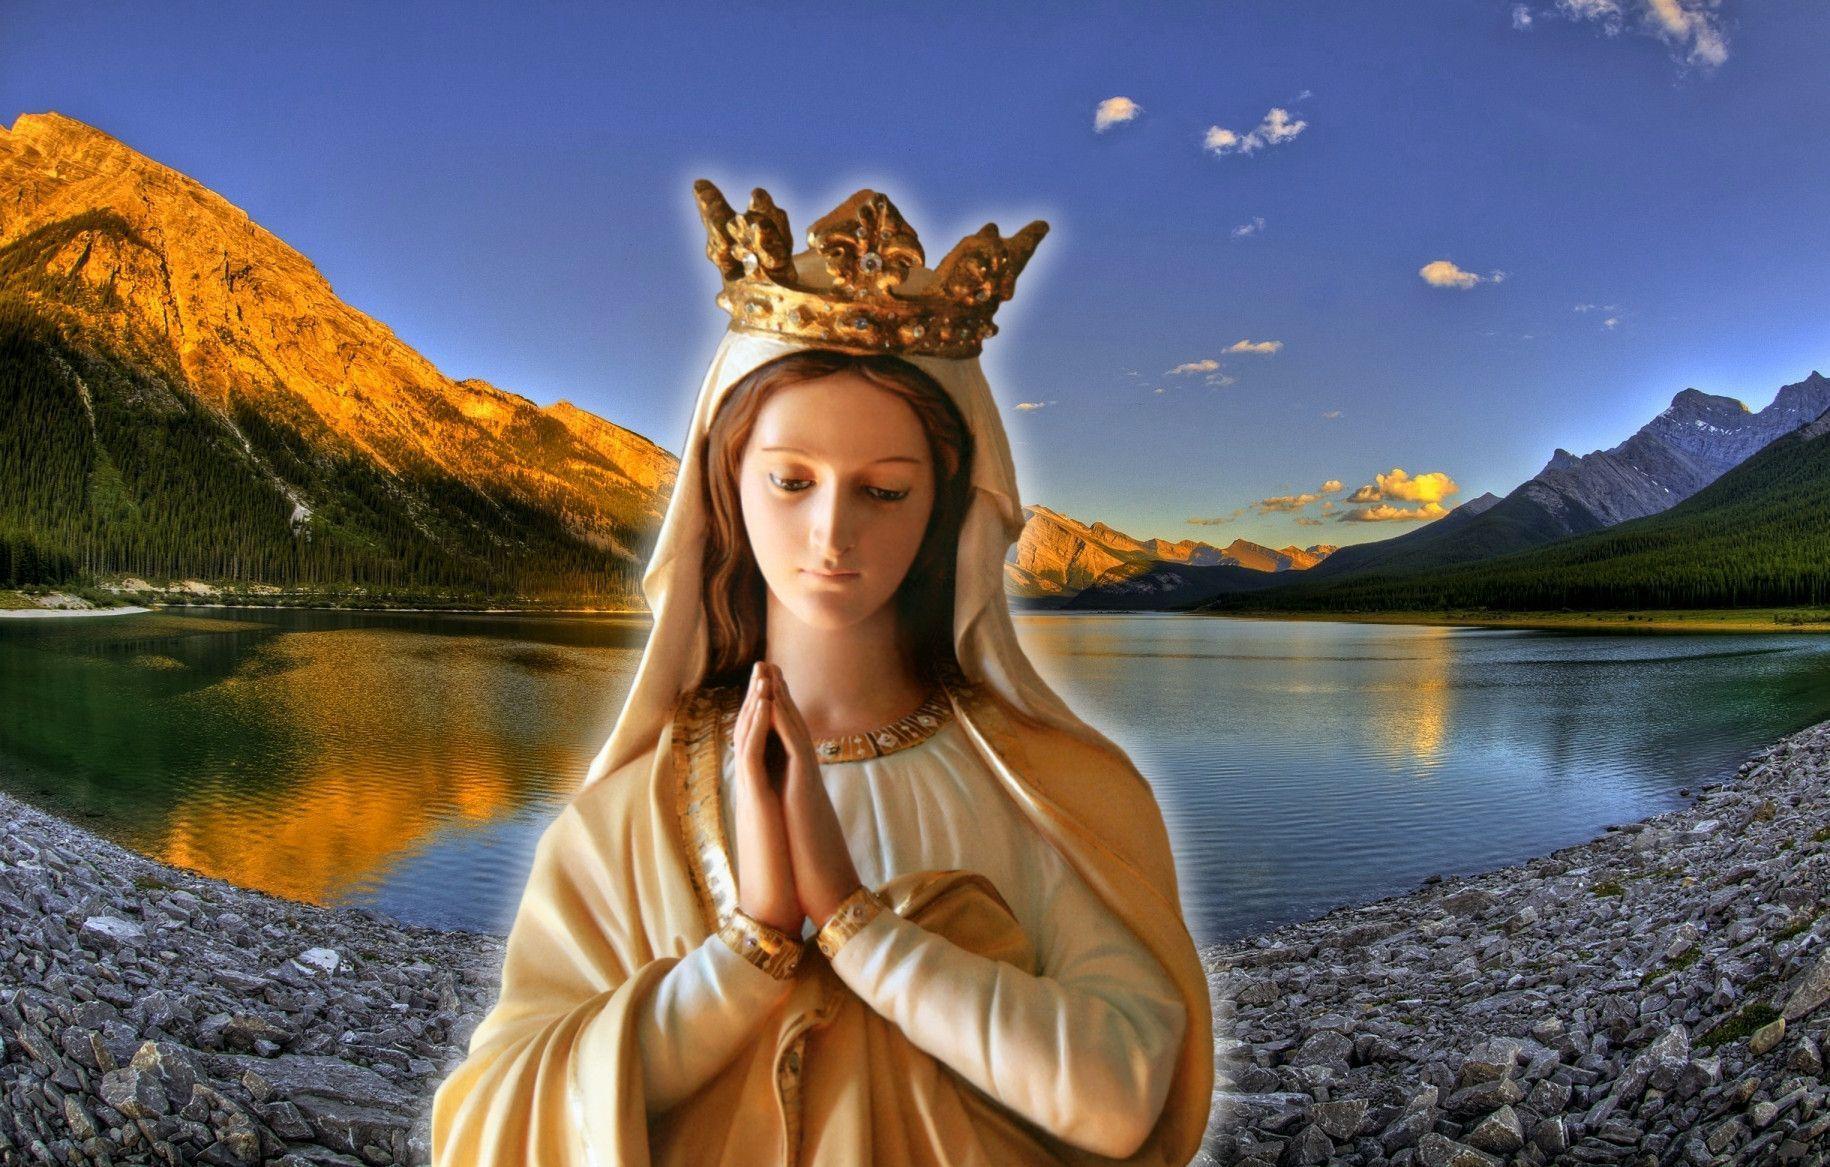 Hình nền Đức Mẹ Maria sẽ mang lại cho bạn sự yên bình và tâm hồn thanh tịnh. Thử tưởng tượng mỗi khi sáng dậy, bạn sẽ được đón tiếp bởi hình ảnh Đức Mẹ đang che chở và bảo vệ bạn. Hãy để tâm hồn được thoải mái và được cảm nhận sự hiện diện của mẹ thiên chúa.